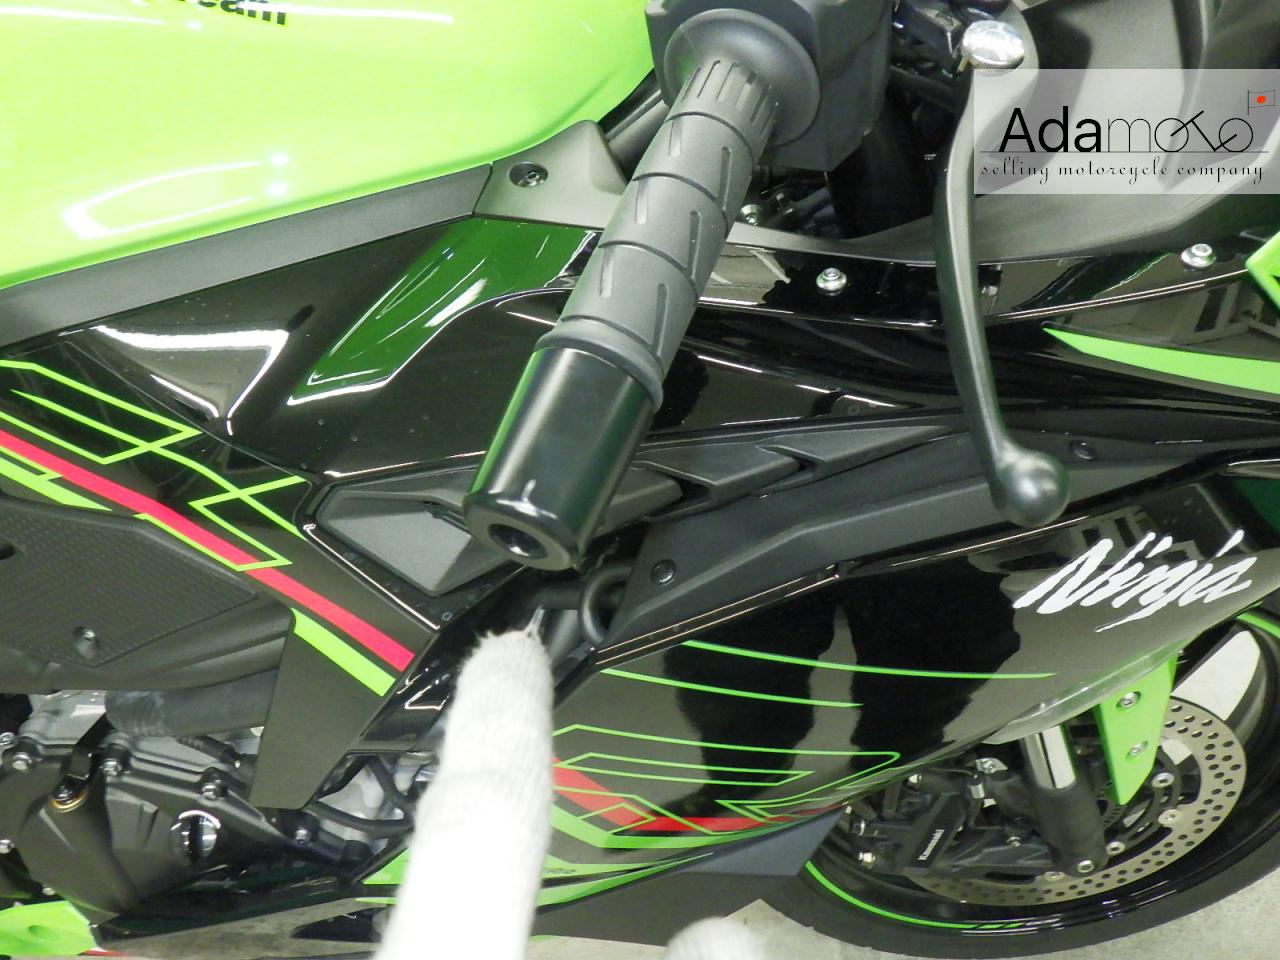 Kawasaki ZX 4RR - Adamoto - Motorcycles from Japan